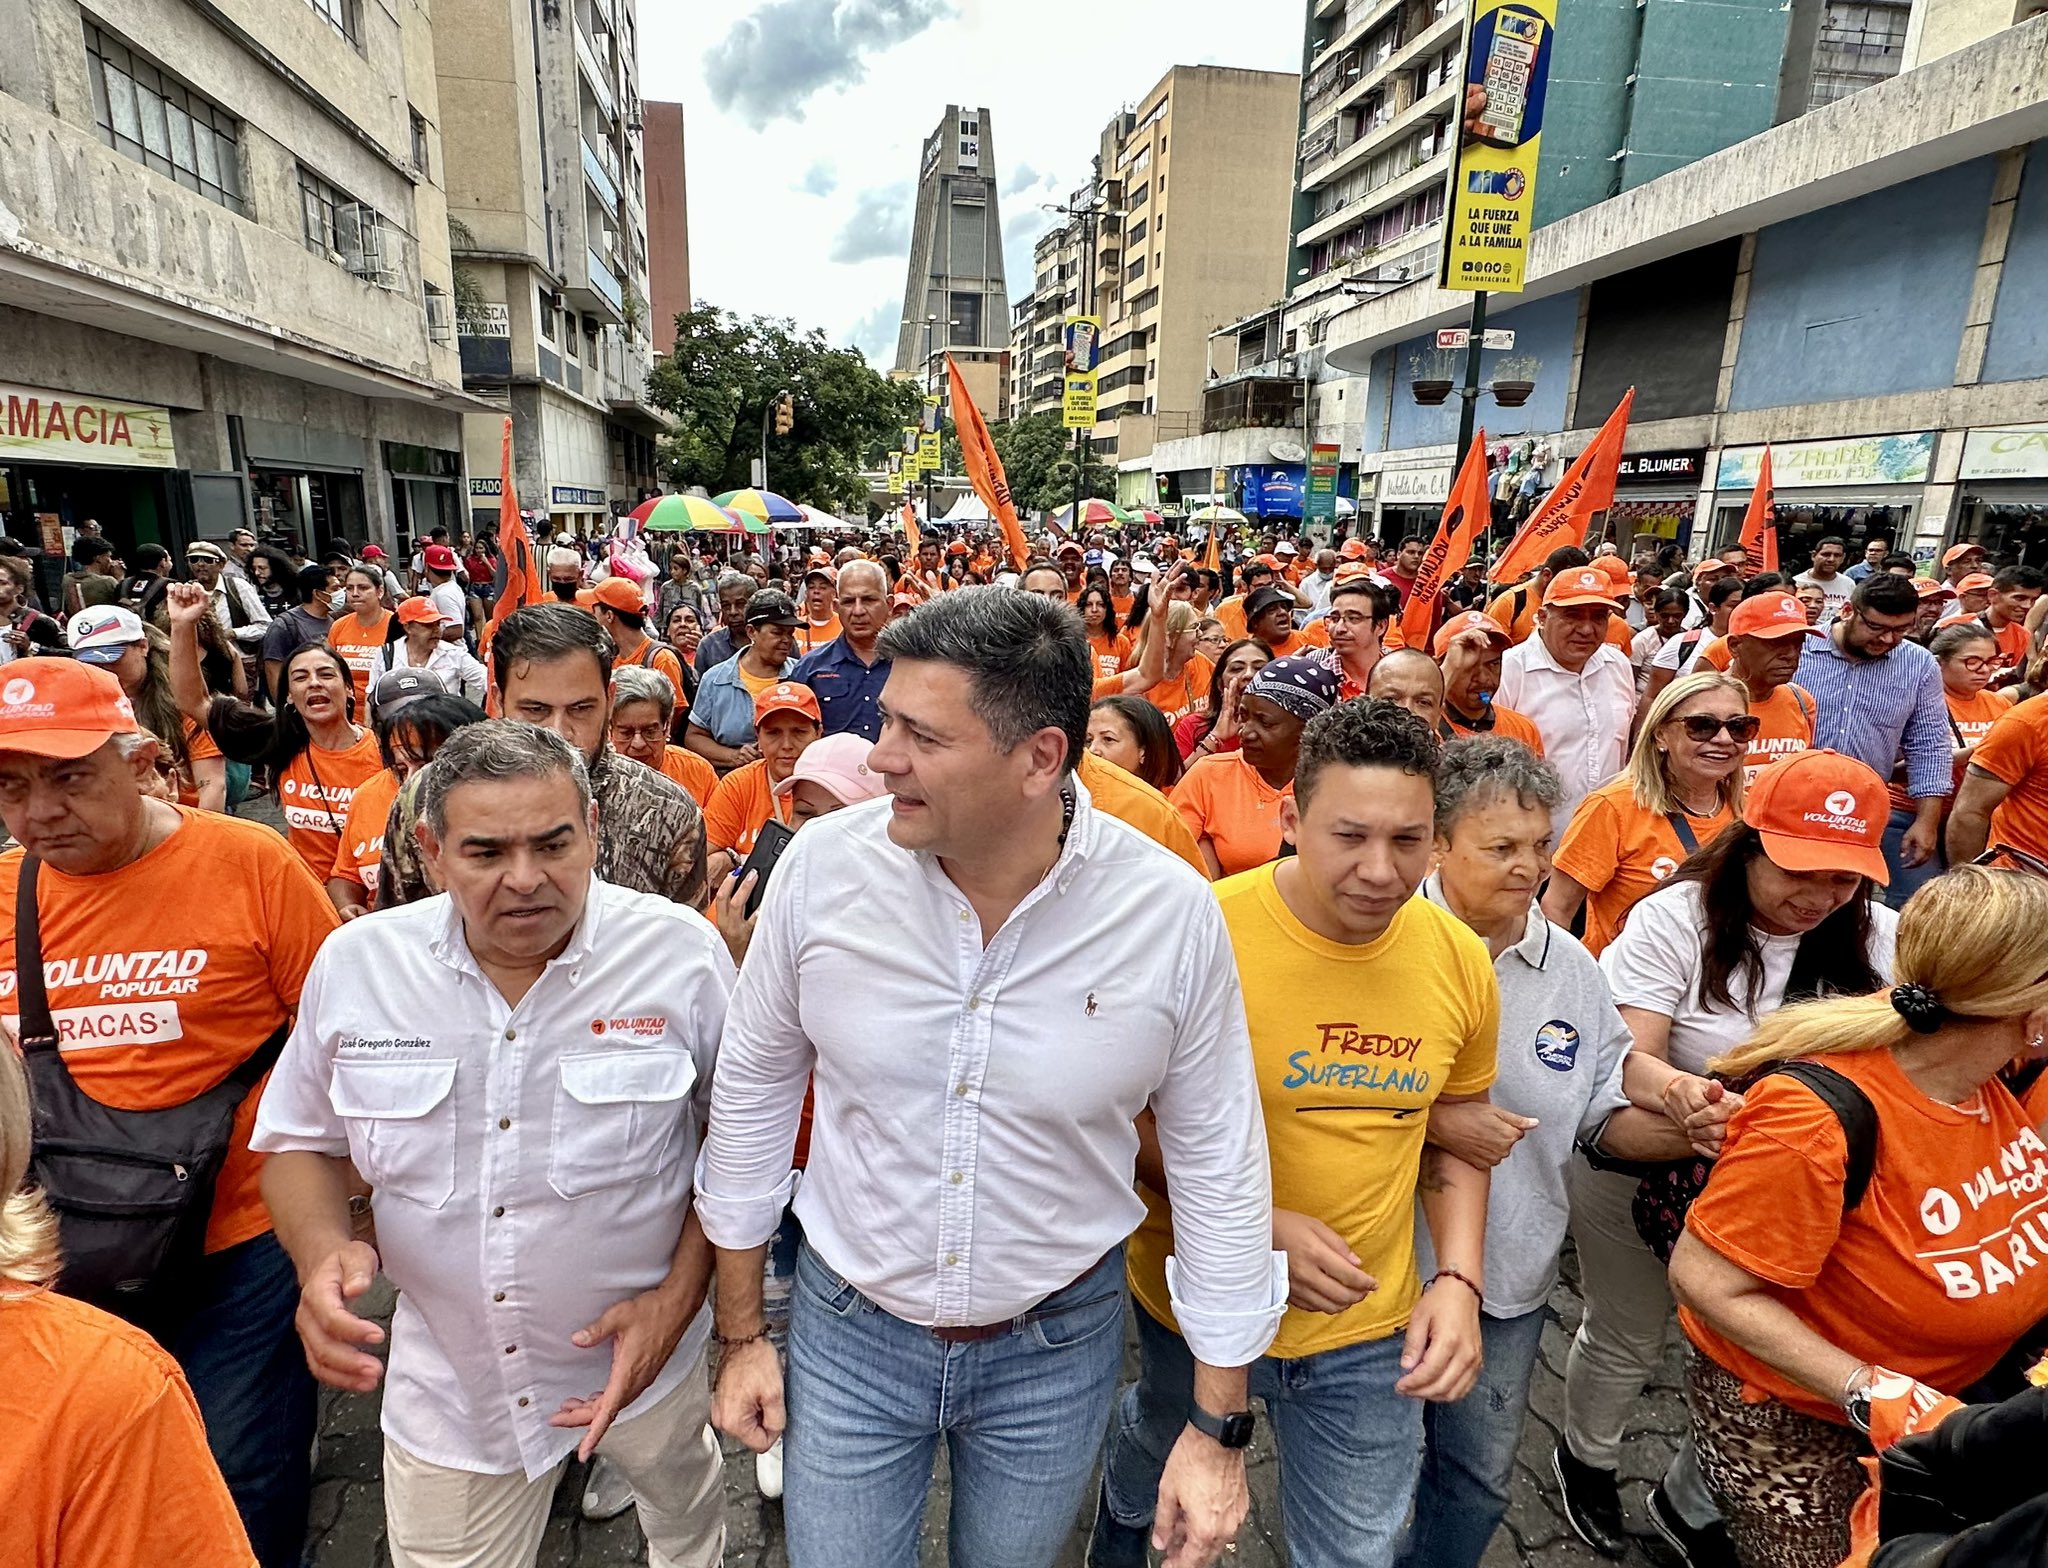 Freddy Superlano comenzó su campaña a la primaria opositora en el Boulevard de Sabana Grande (Fotos)